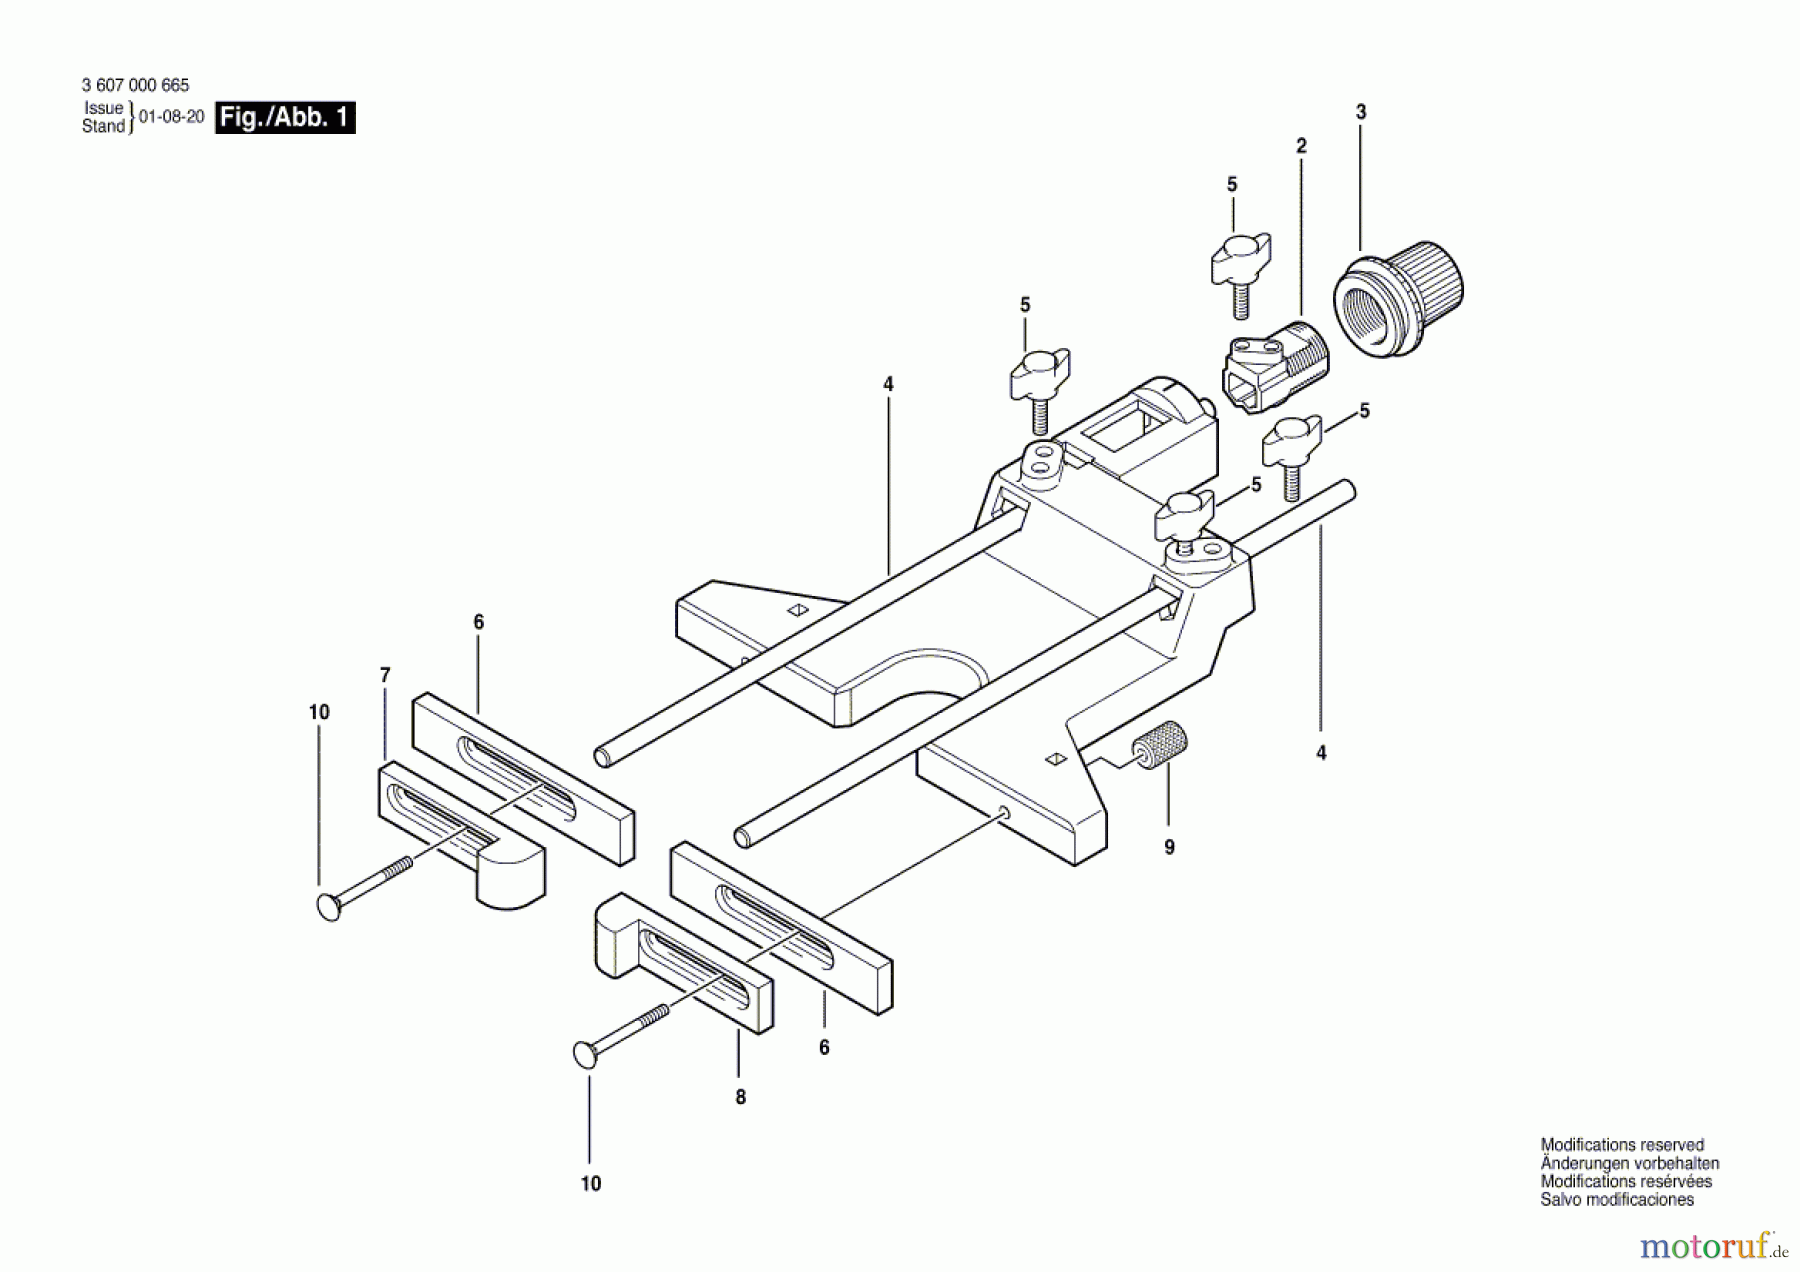  Bosch Werkzeug Parallelanschlag RA 1051 Seite 1